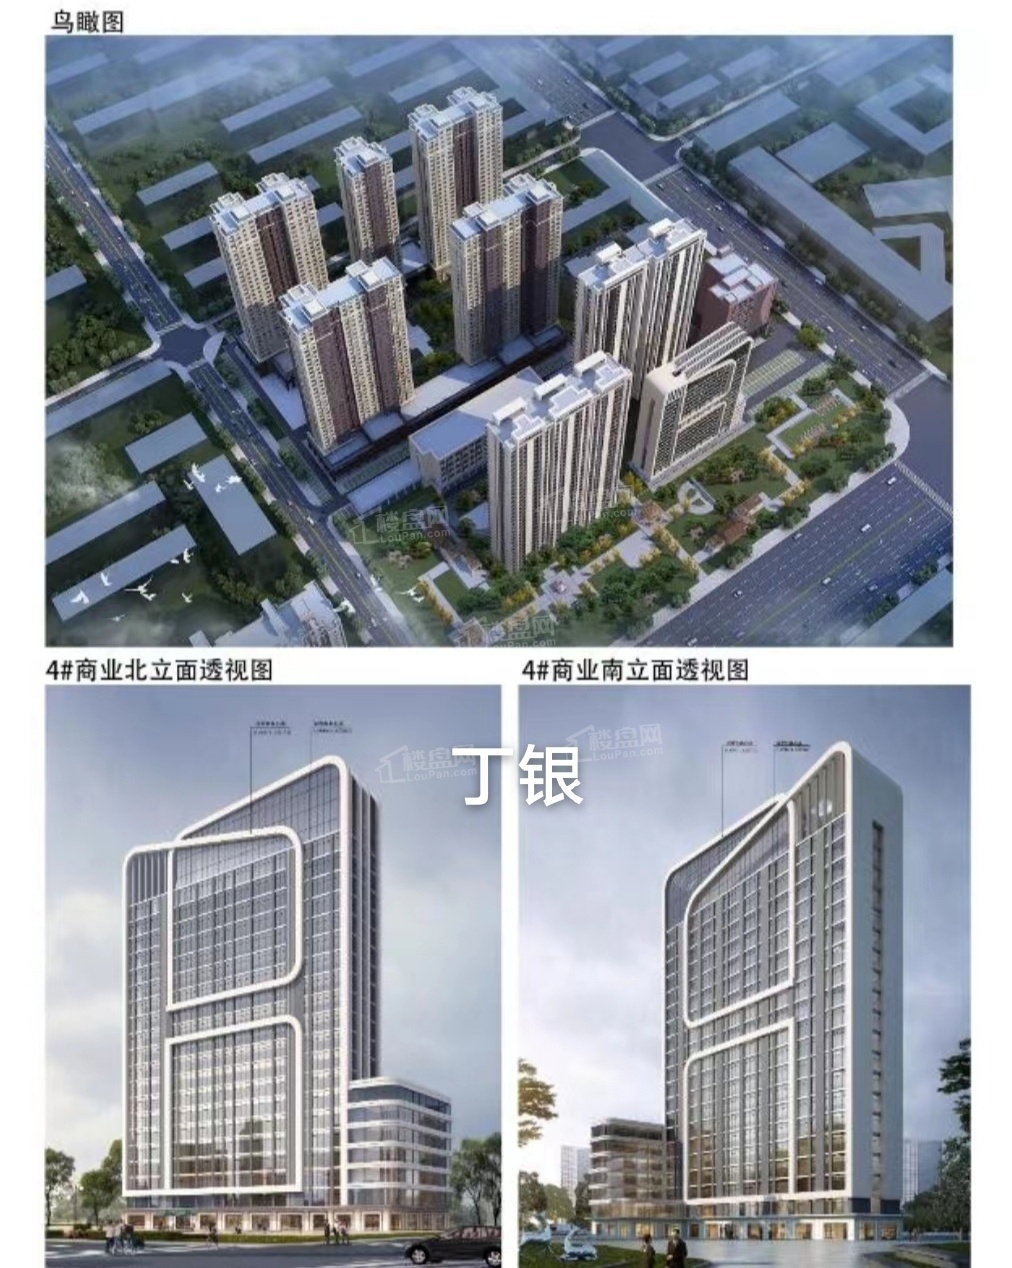 福宁印项目在售户型建面108-145m²